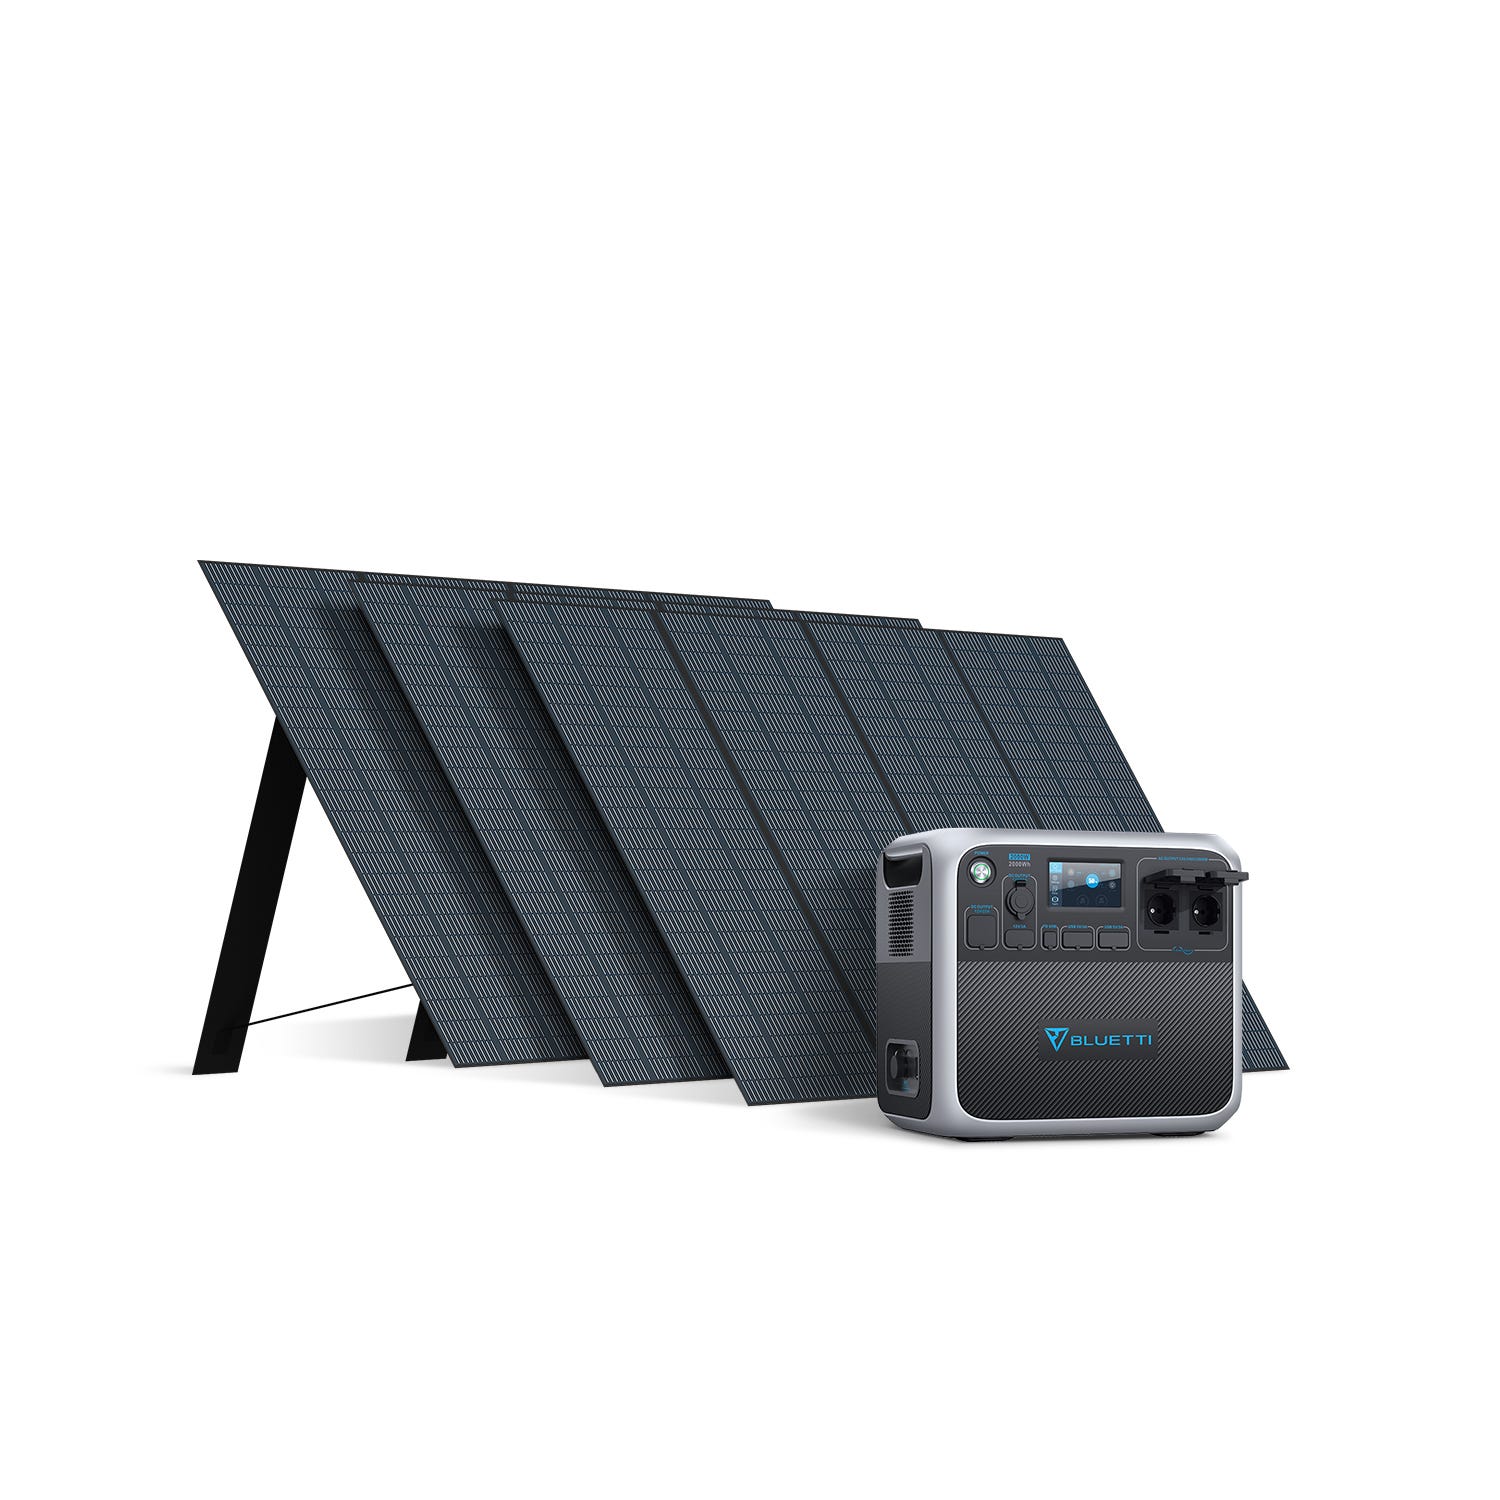 Los mejores generadores de energía solar para casa o camping